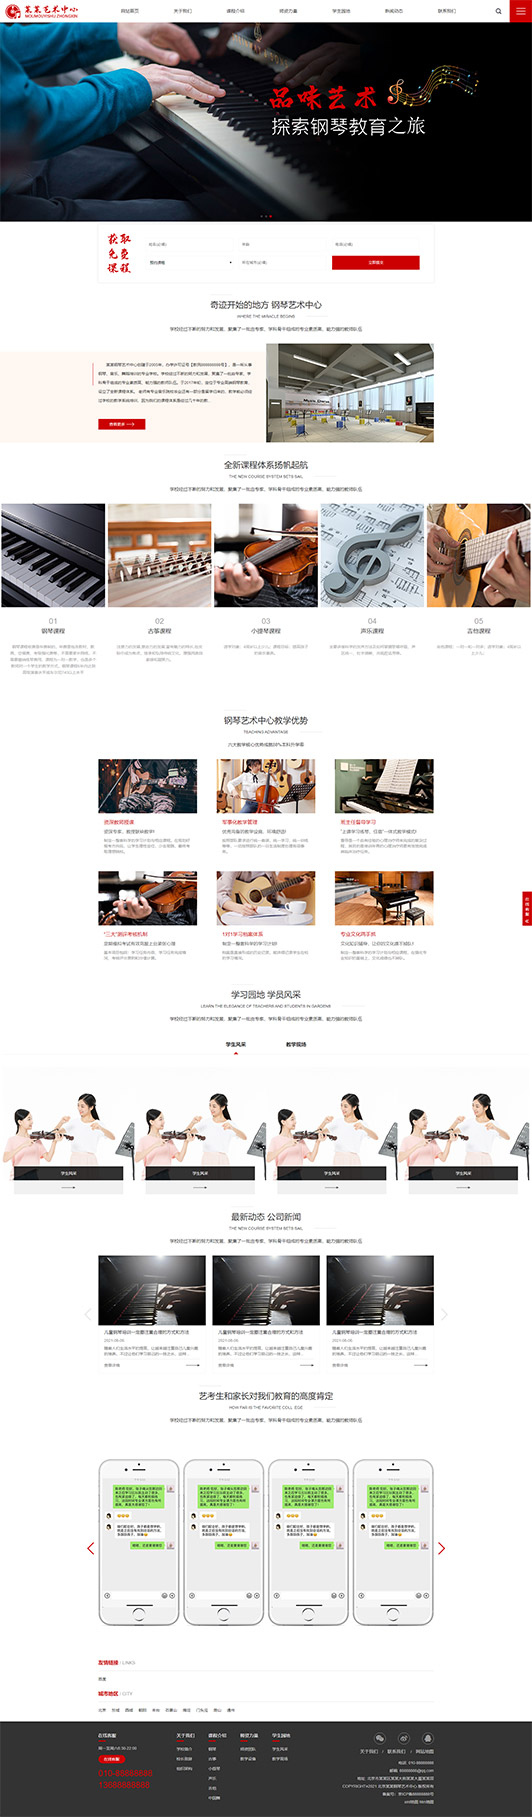 九江钢琴艺术培训公司响应式企业网站